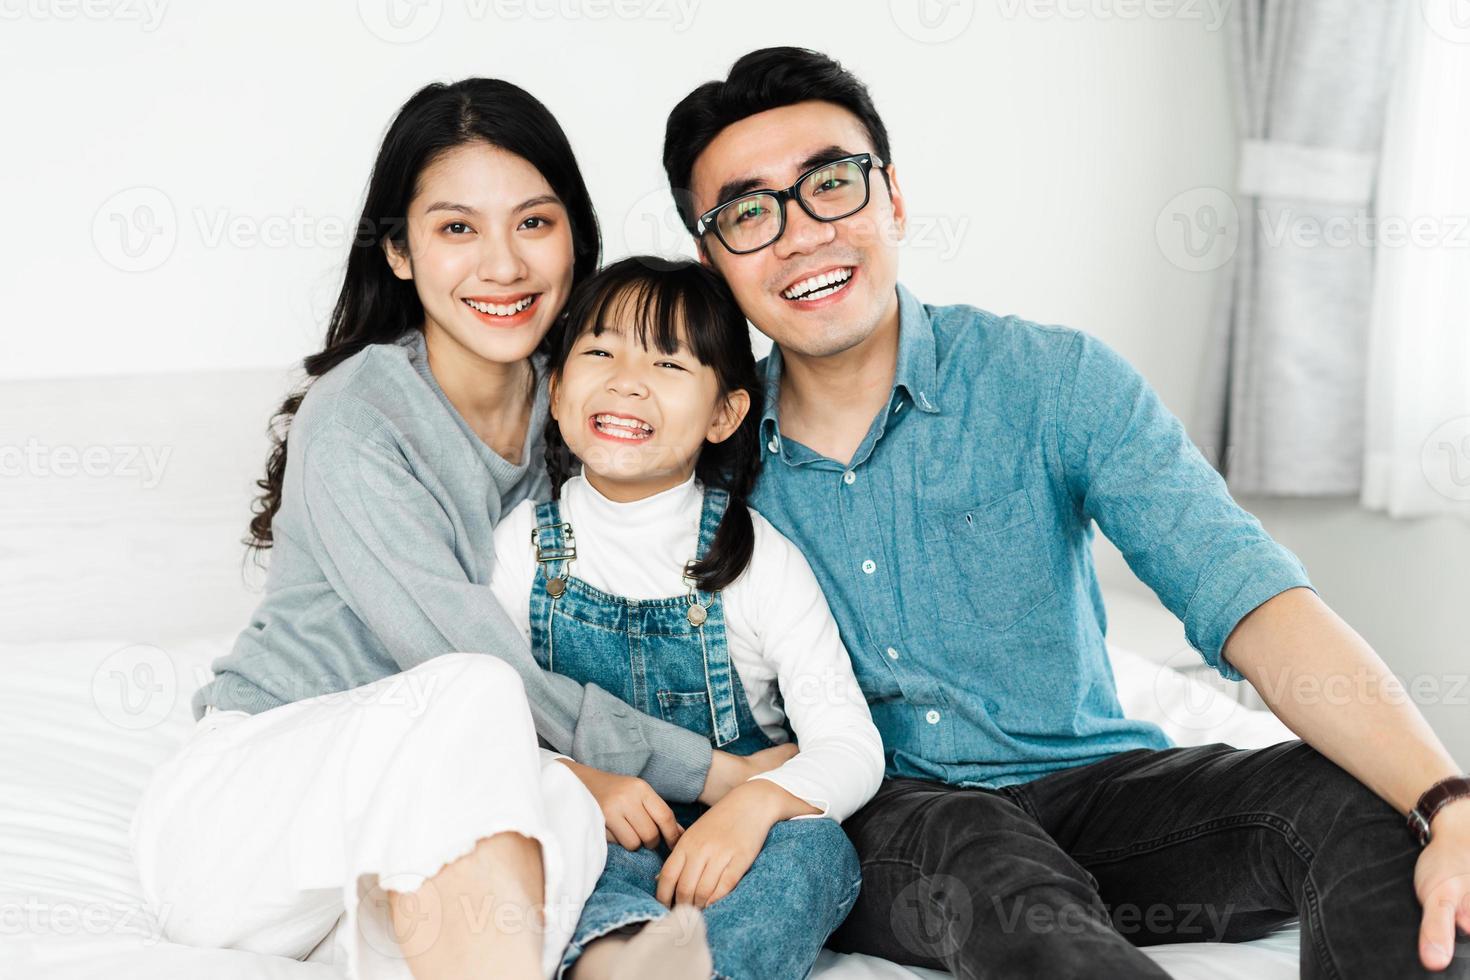 piccolo ritratto di famiglia asiatica a casa foto